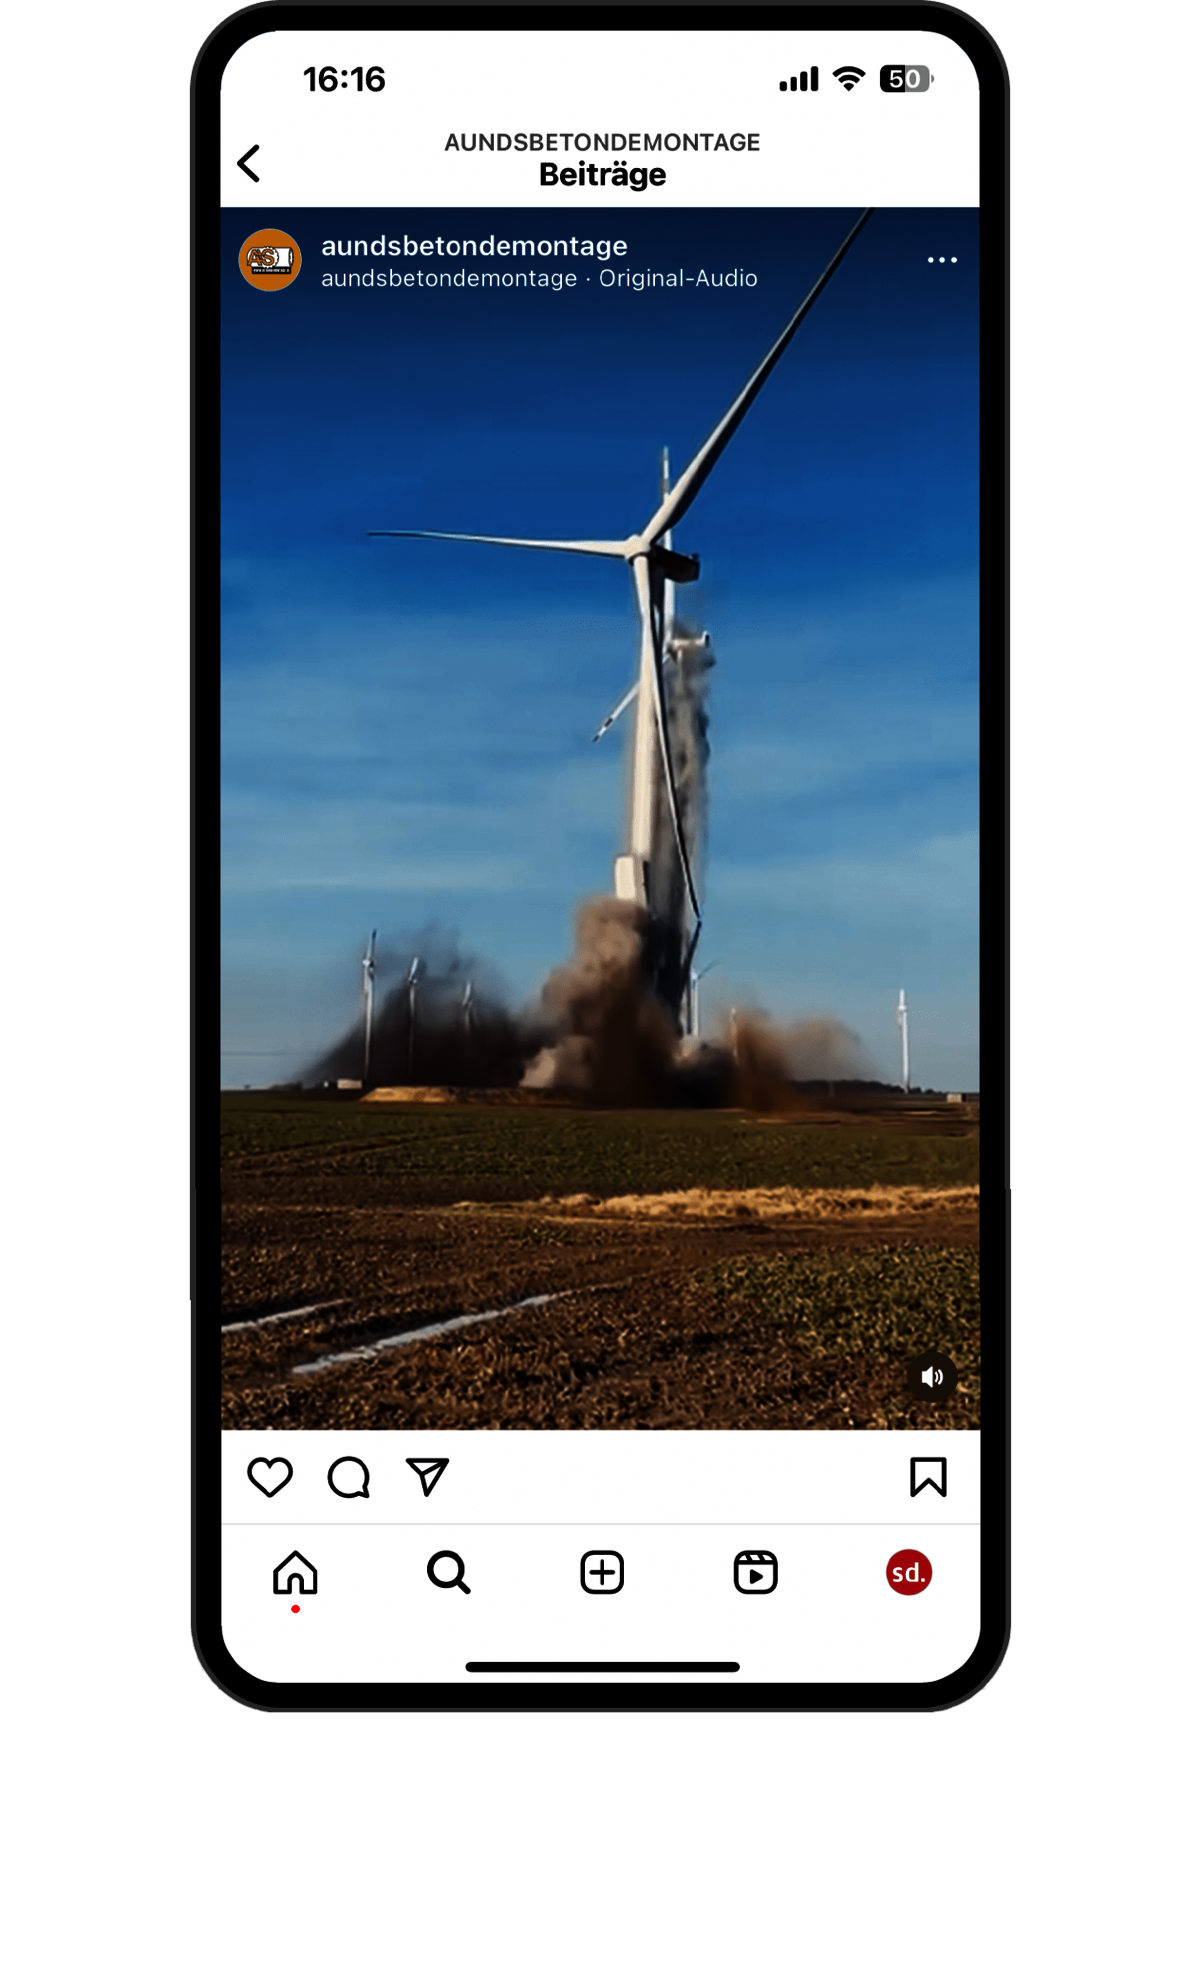 Das Bild zeigt ein Smartphone mit einem Instagram-Posting der A&S Betondemontage GmbH.